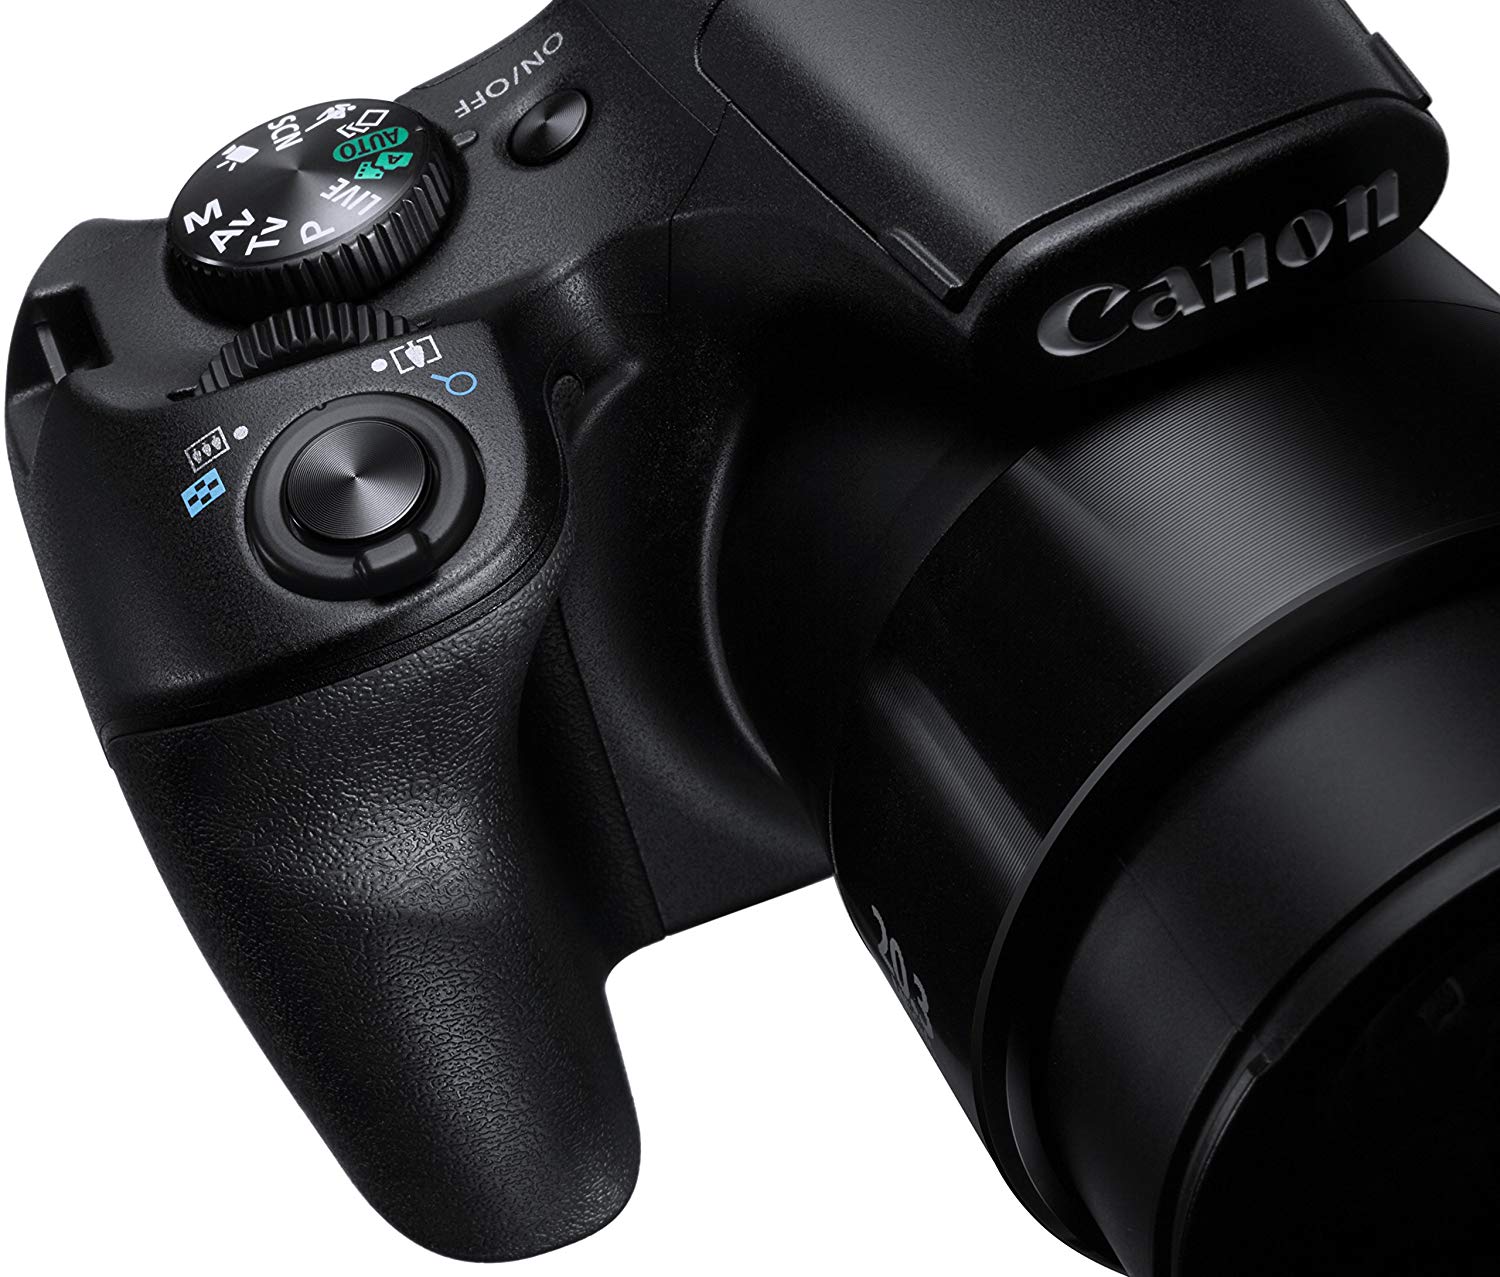 Op de 2 de plaats Bestsellers in Digitale camera's de Canon PowerShot sx540 HS